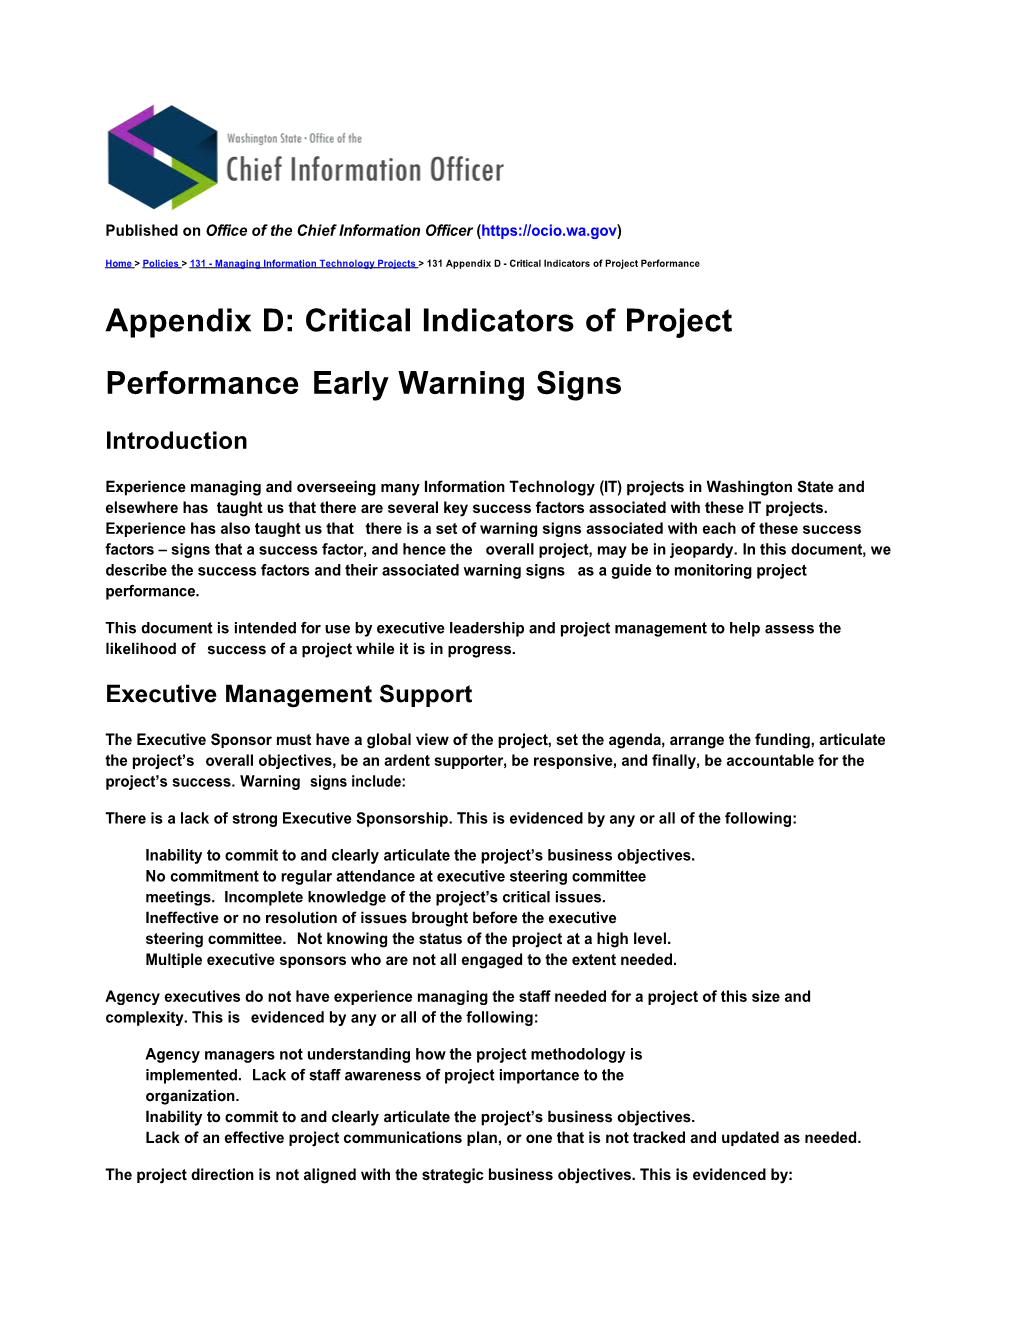 131 Appendix D - Critical Indicators of Project Performance